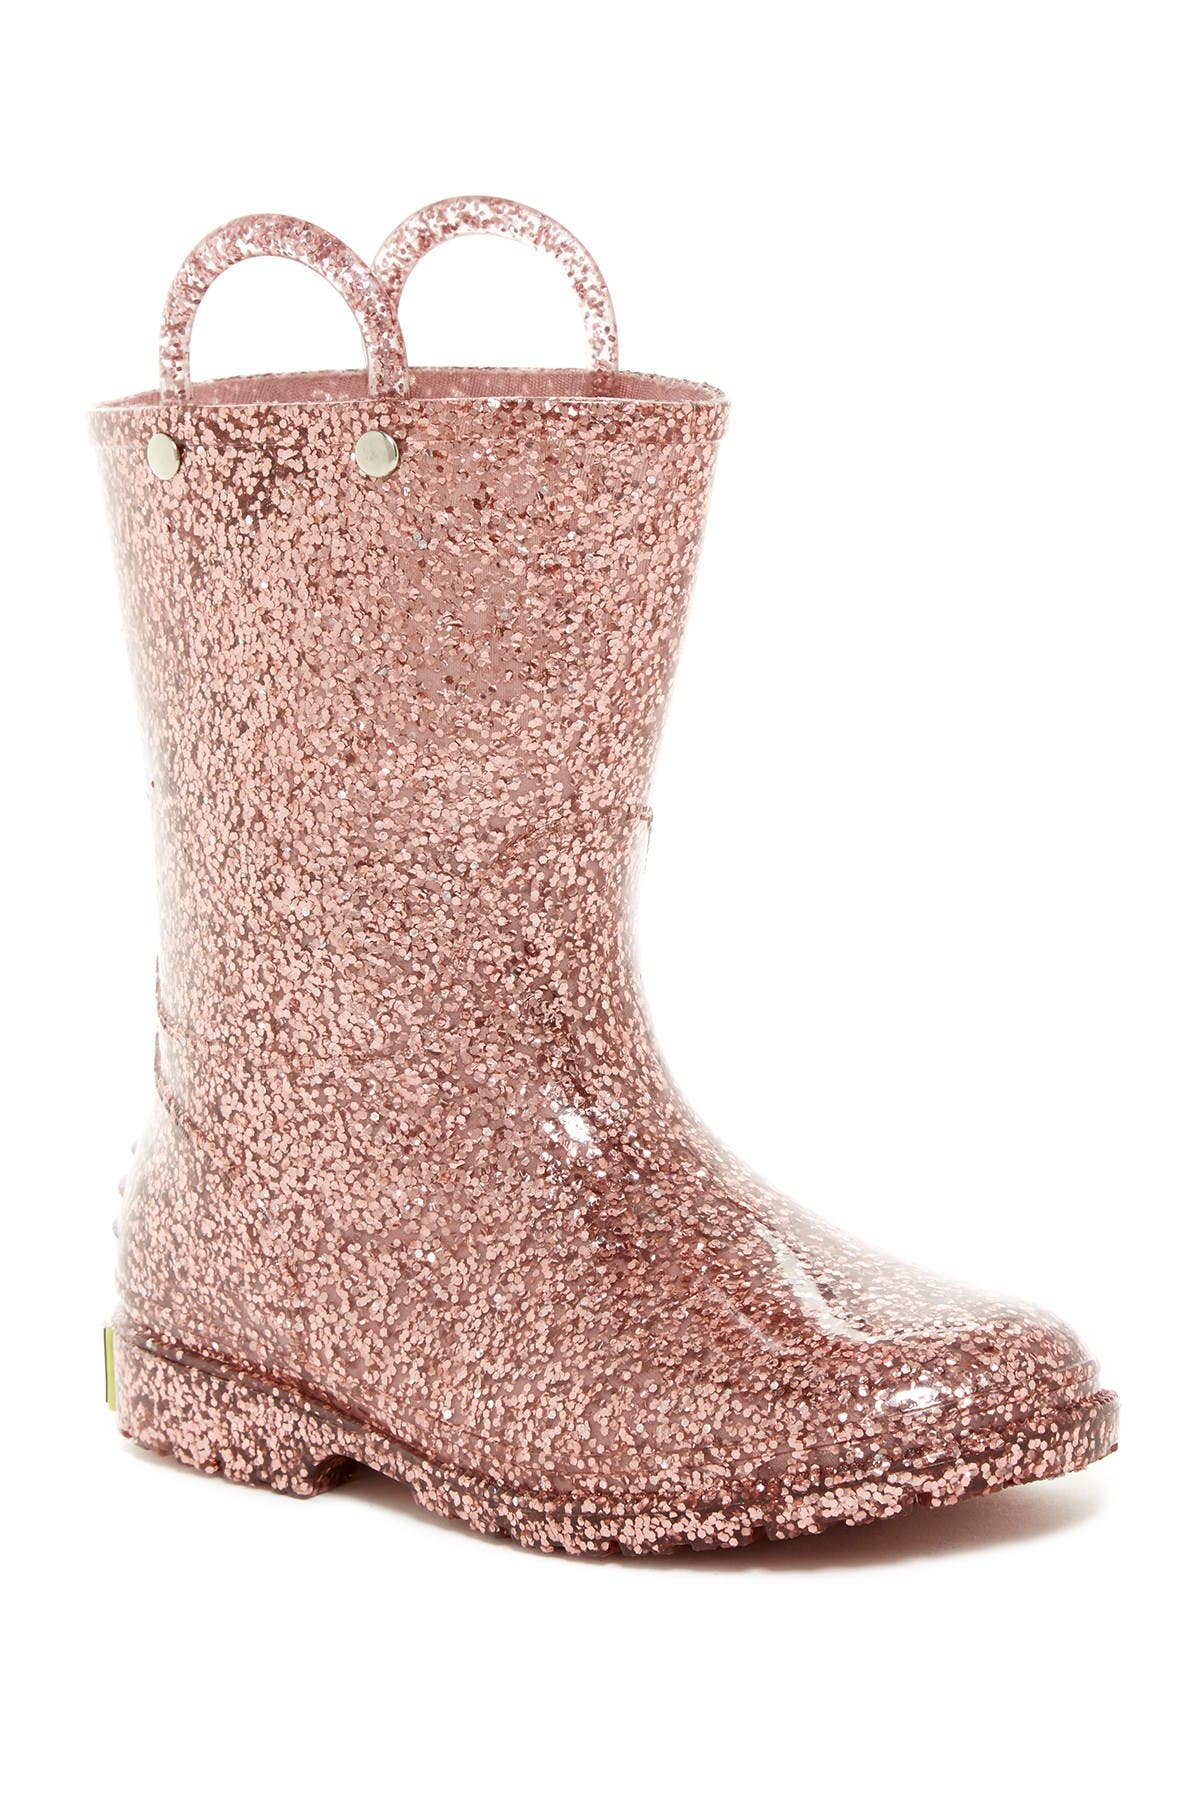 gold glitter boots girls